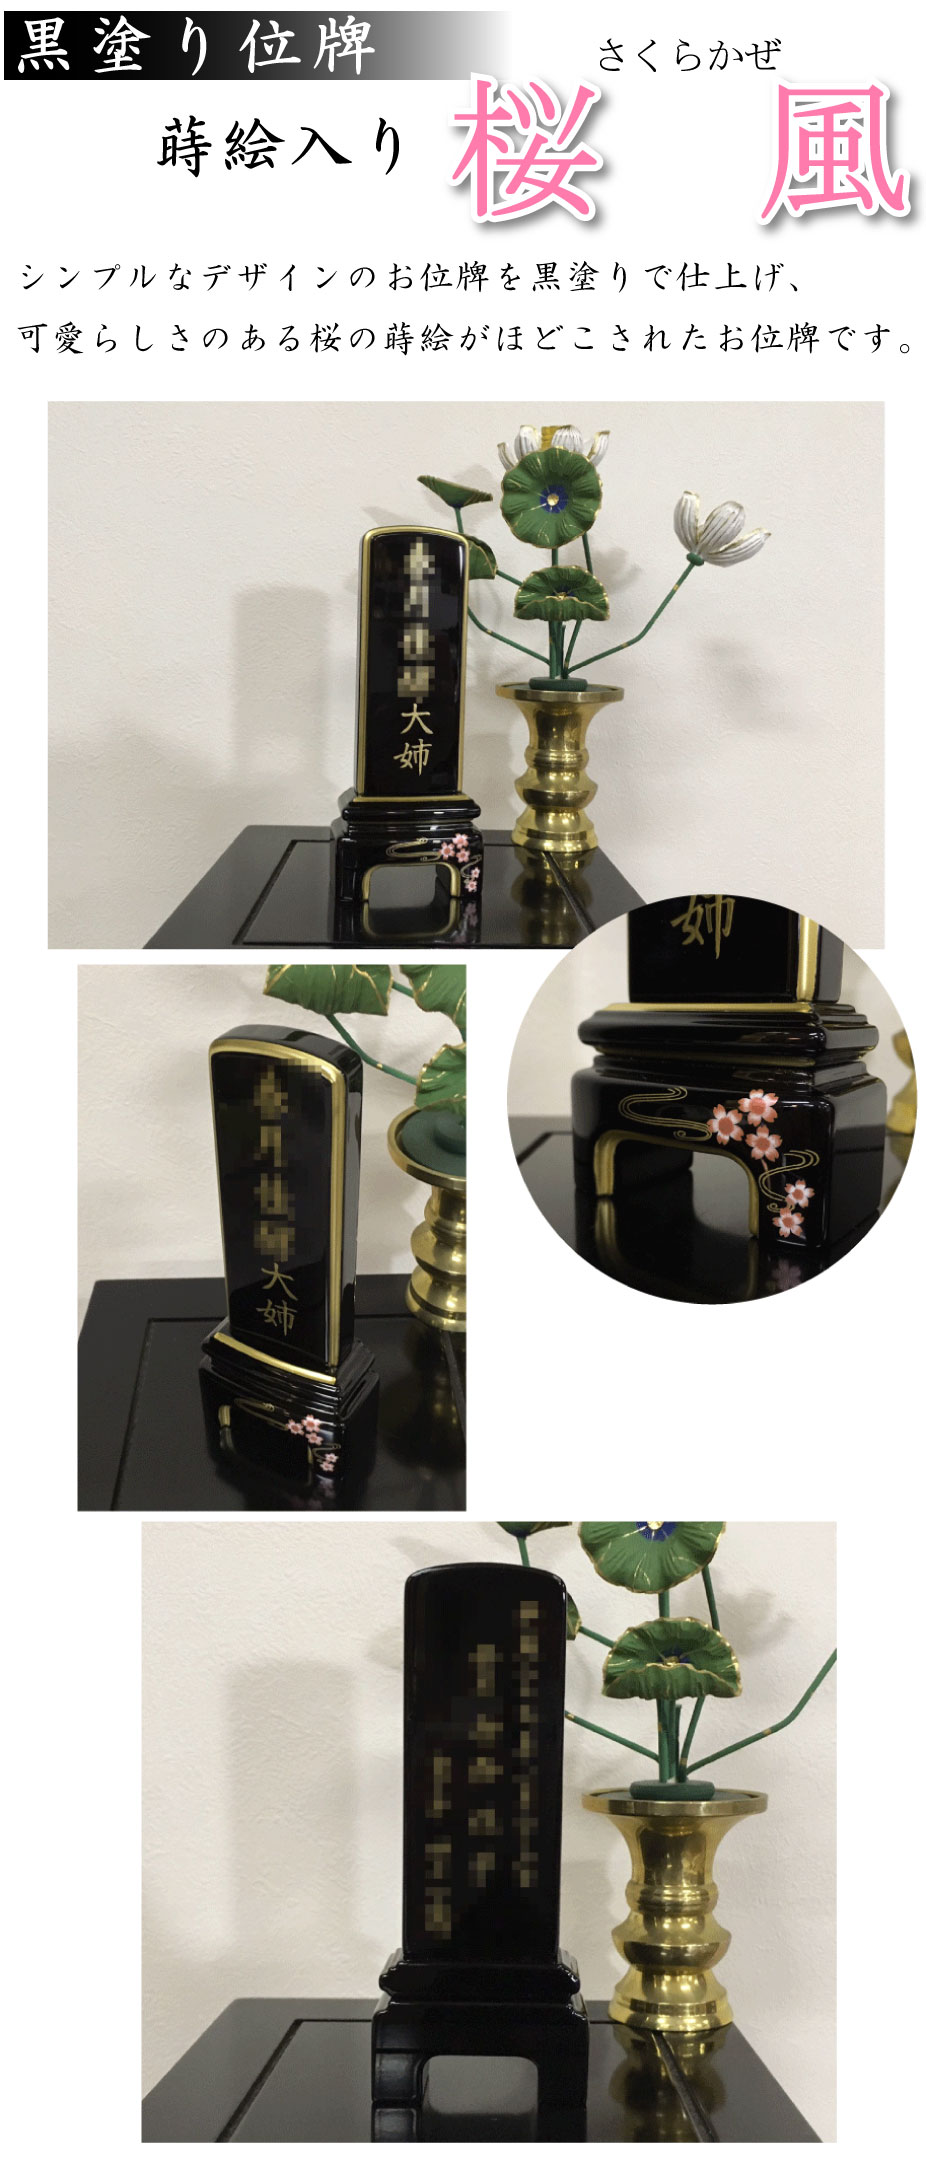 黒塗り位牌の蒔絵入り「桜風」の通販、購入、ご注文ならお任せください。シンプルなデザインのお位牌を黒塗りで仕上げ、可愛らしさのある桜の蒔絵がほどこされたお位牌です。